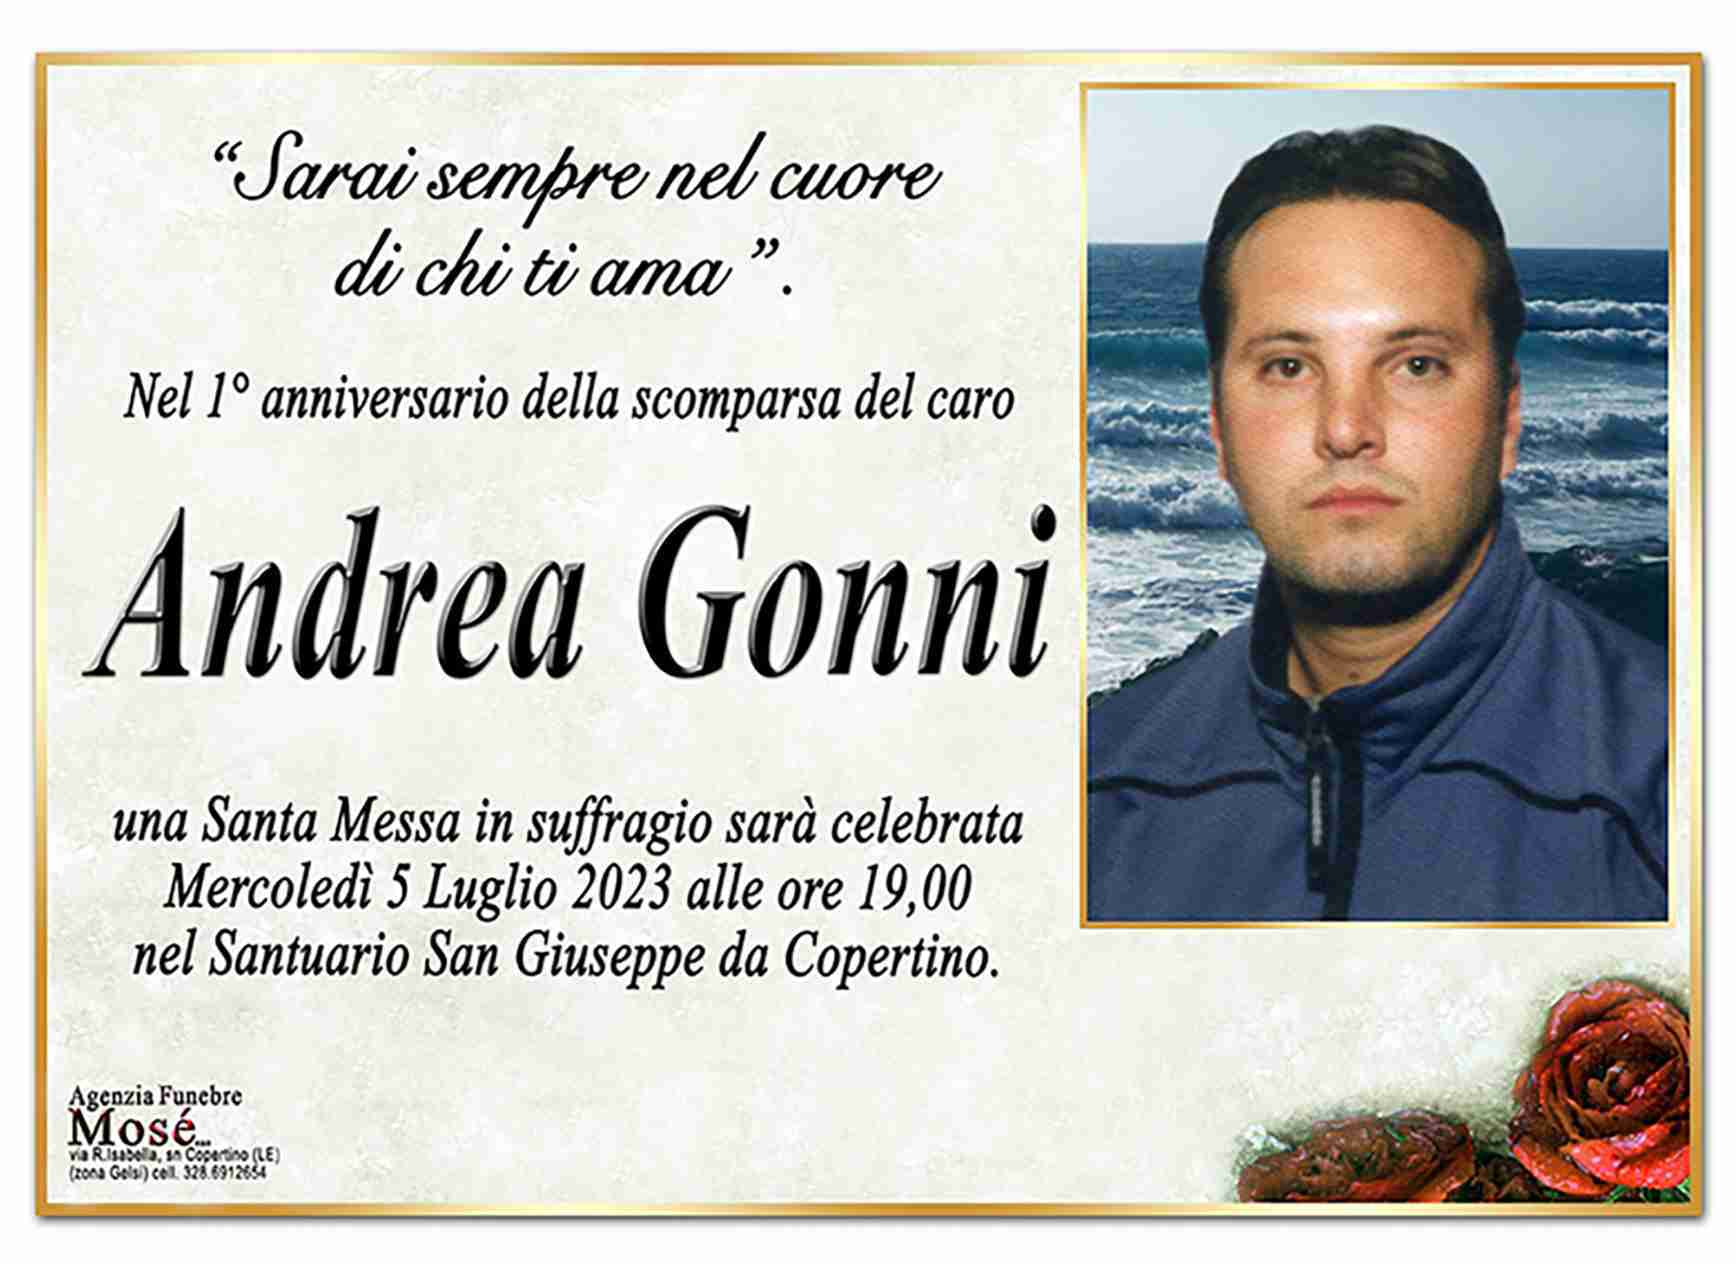 Andrea Gonni